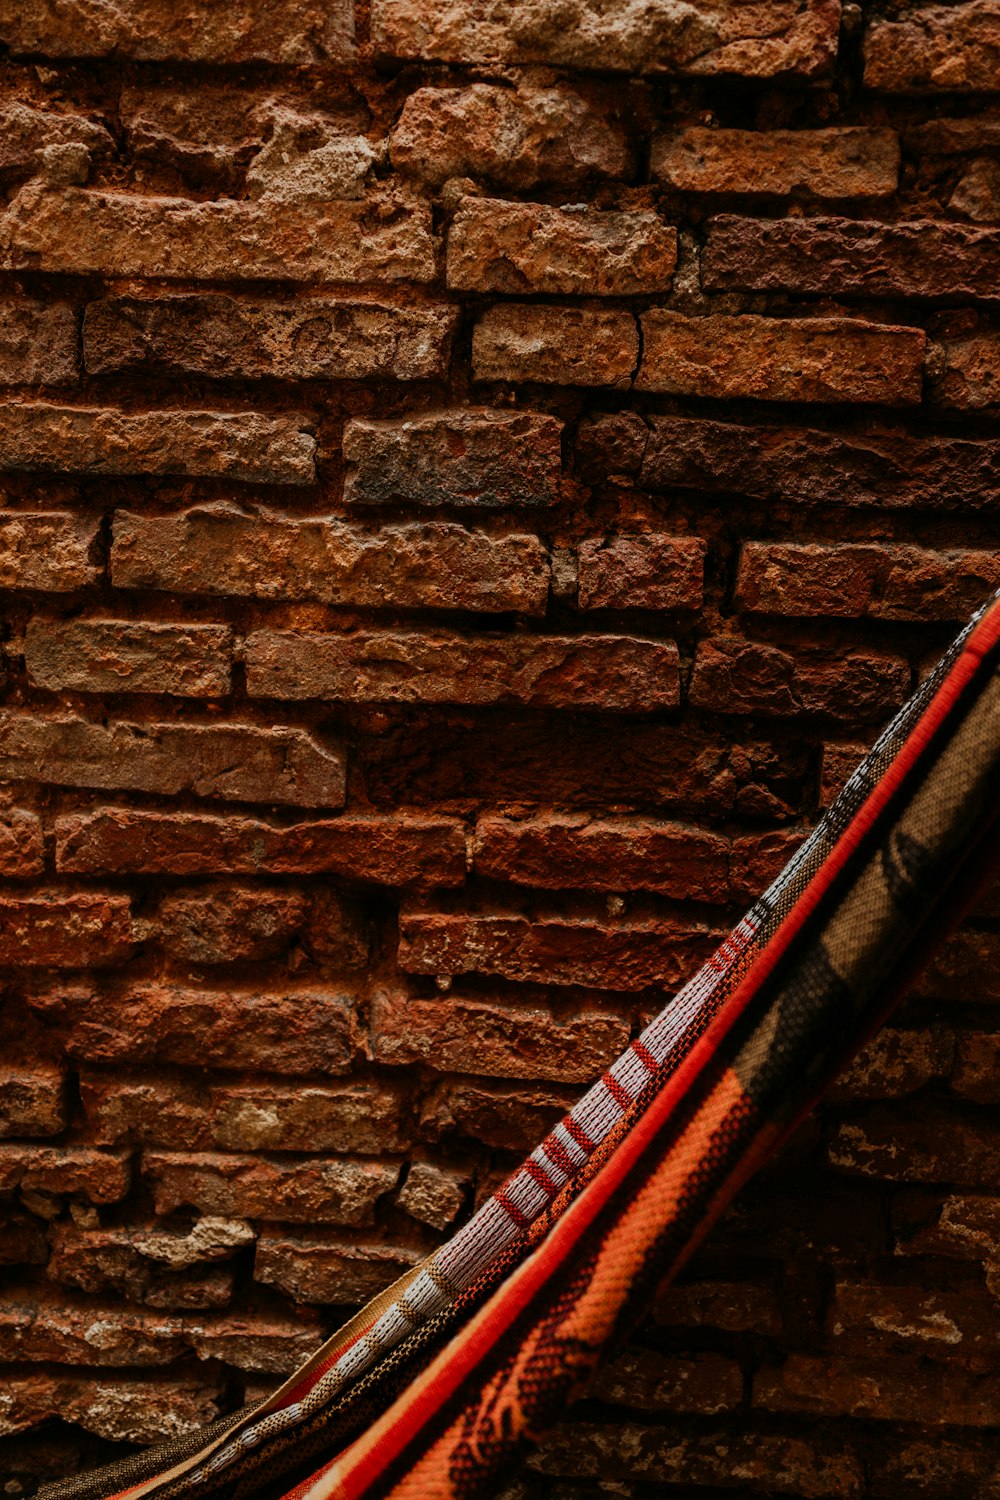 guitarra elétrica vermelha e preta apoiada na parede de tijolos marrons